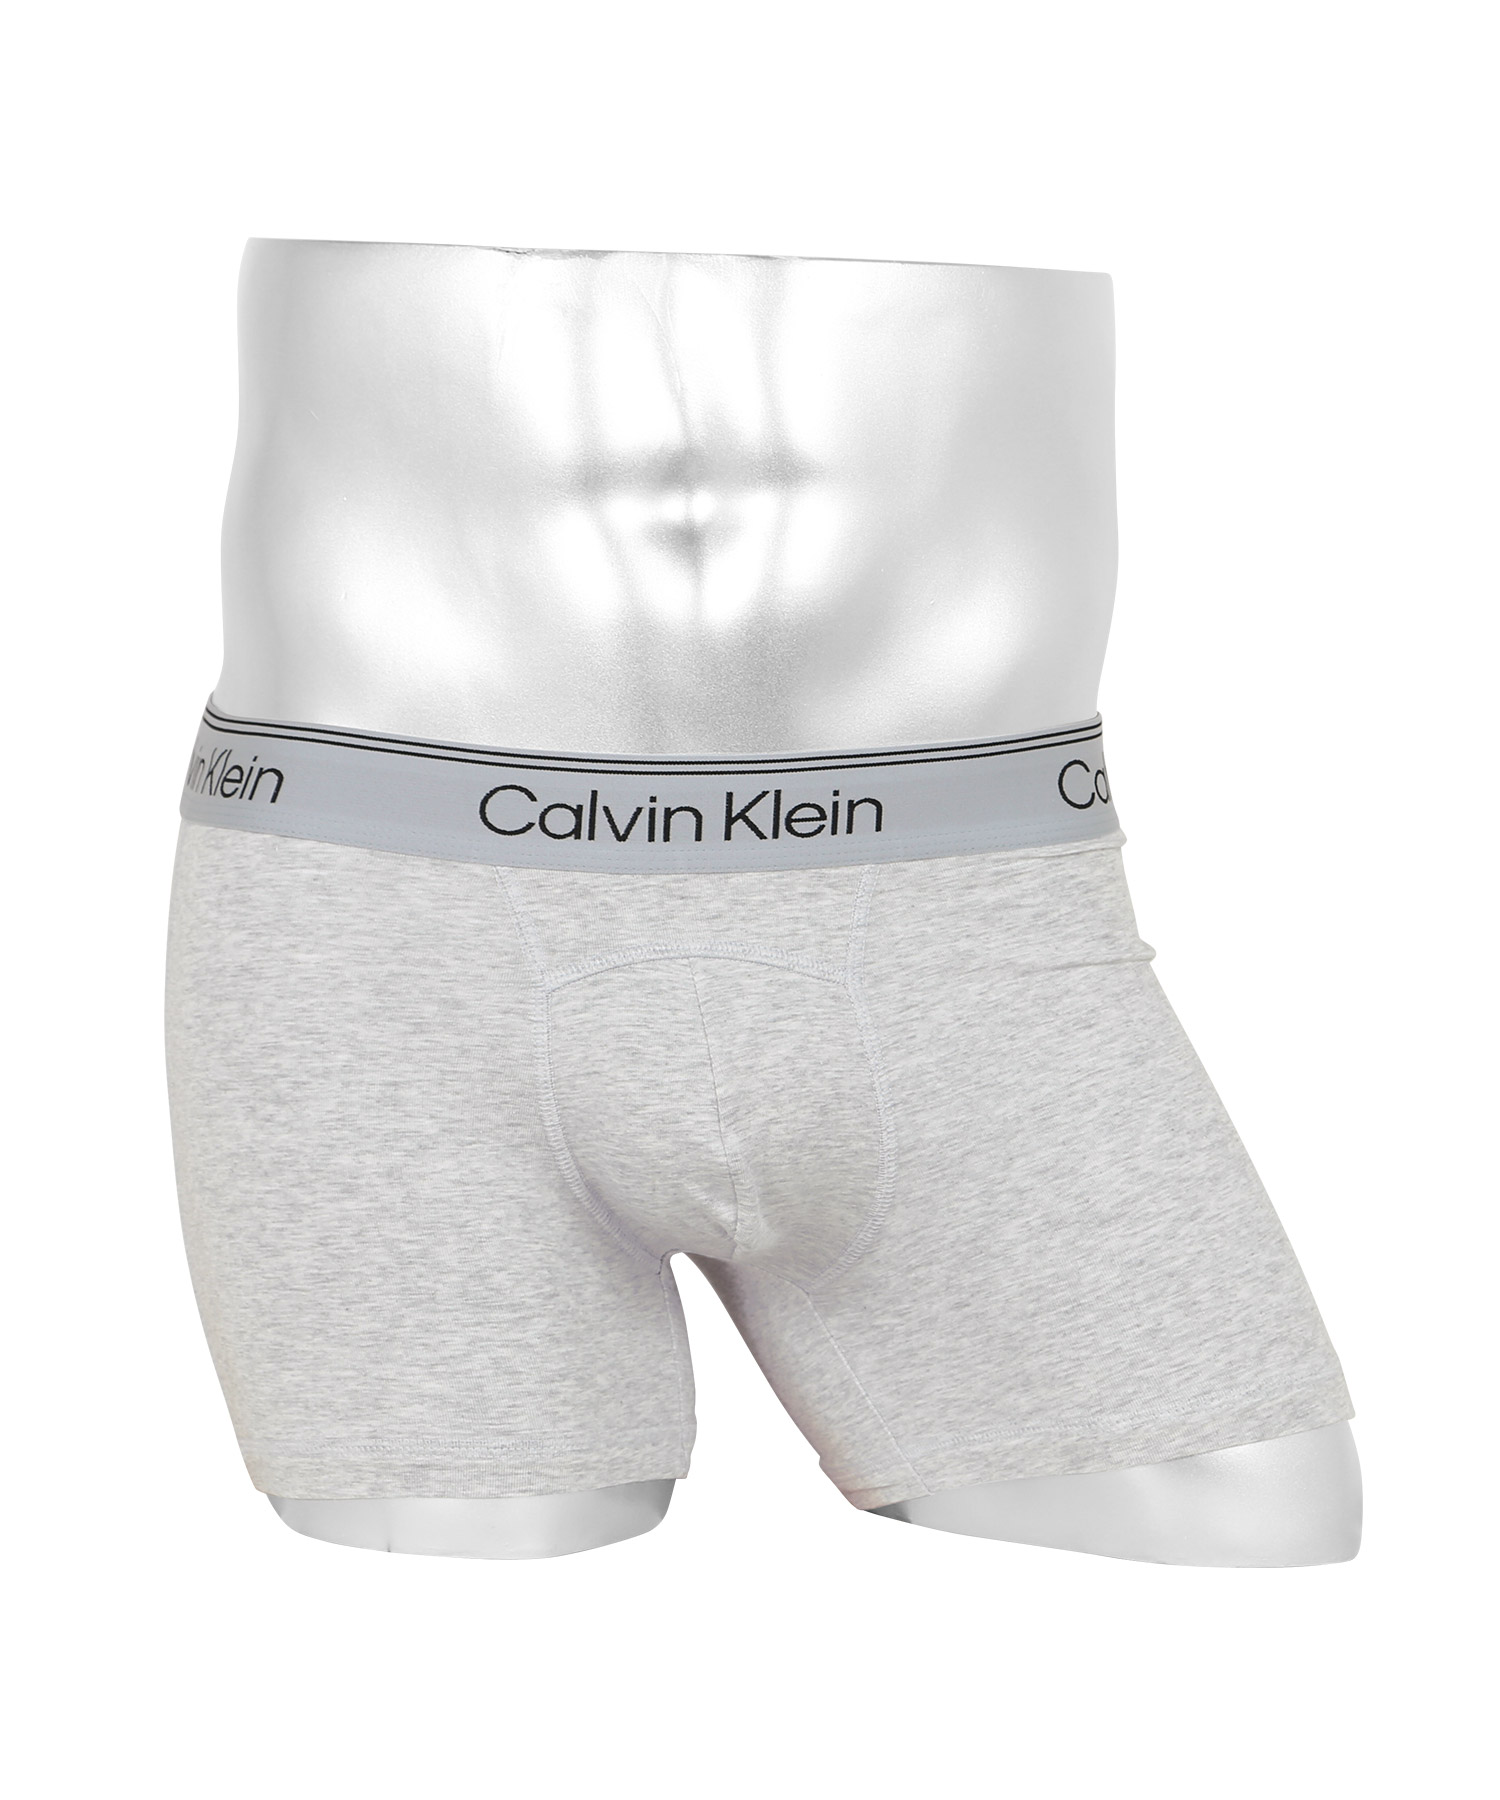 カルバンクライン Calvin Klein ボクサーパンツ メンズ アンダーウェア 男性下着 コット...